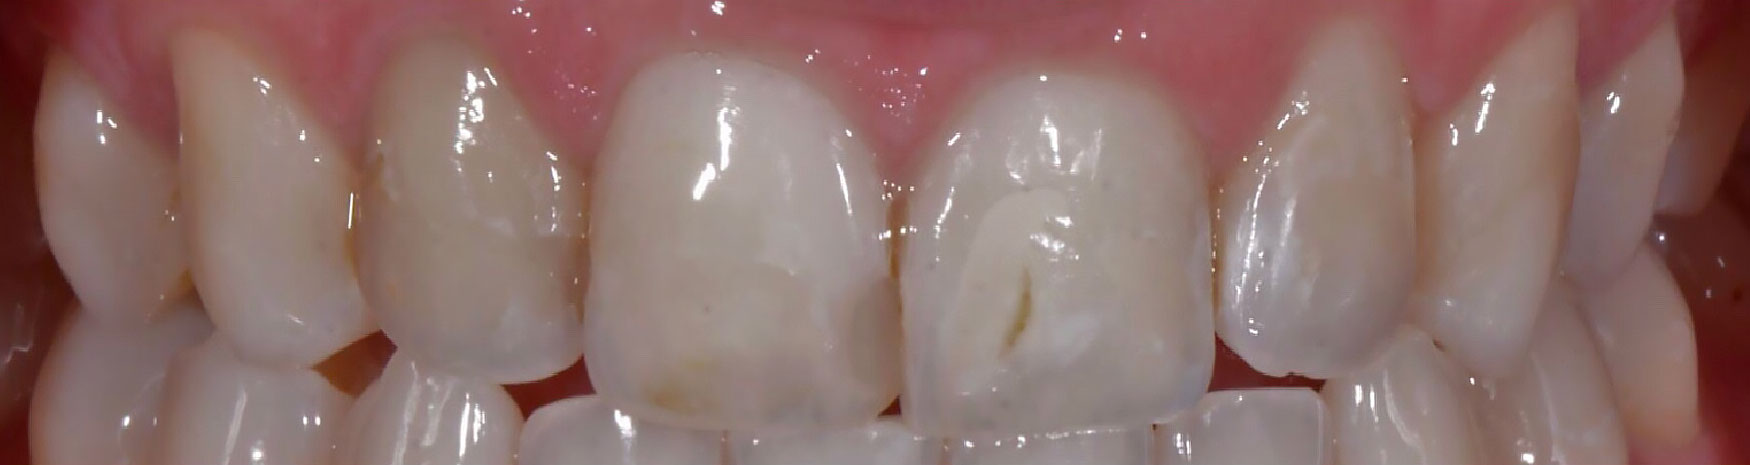 dental restoration case before